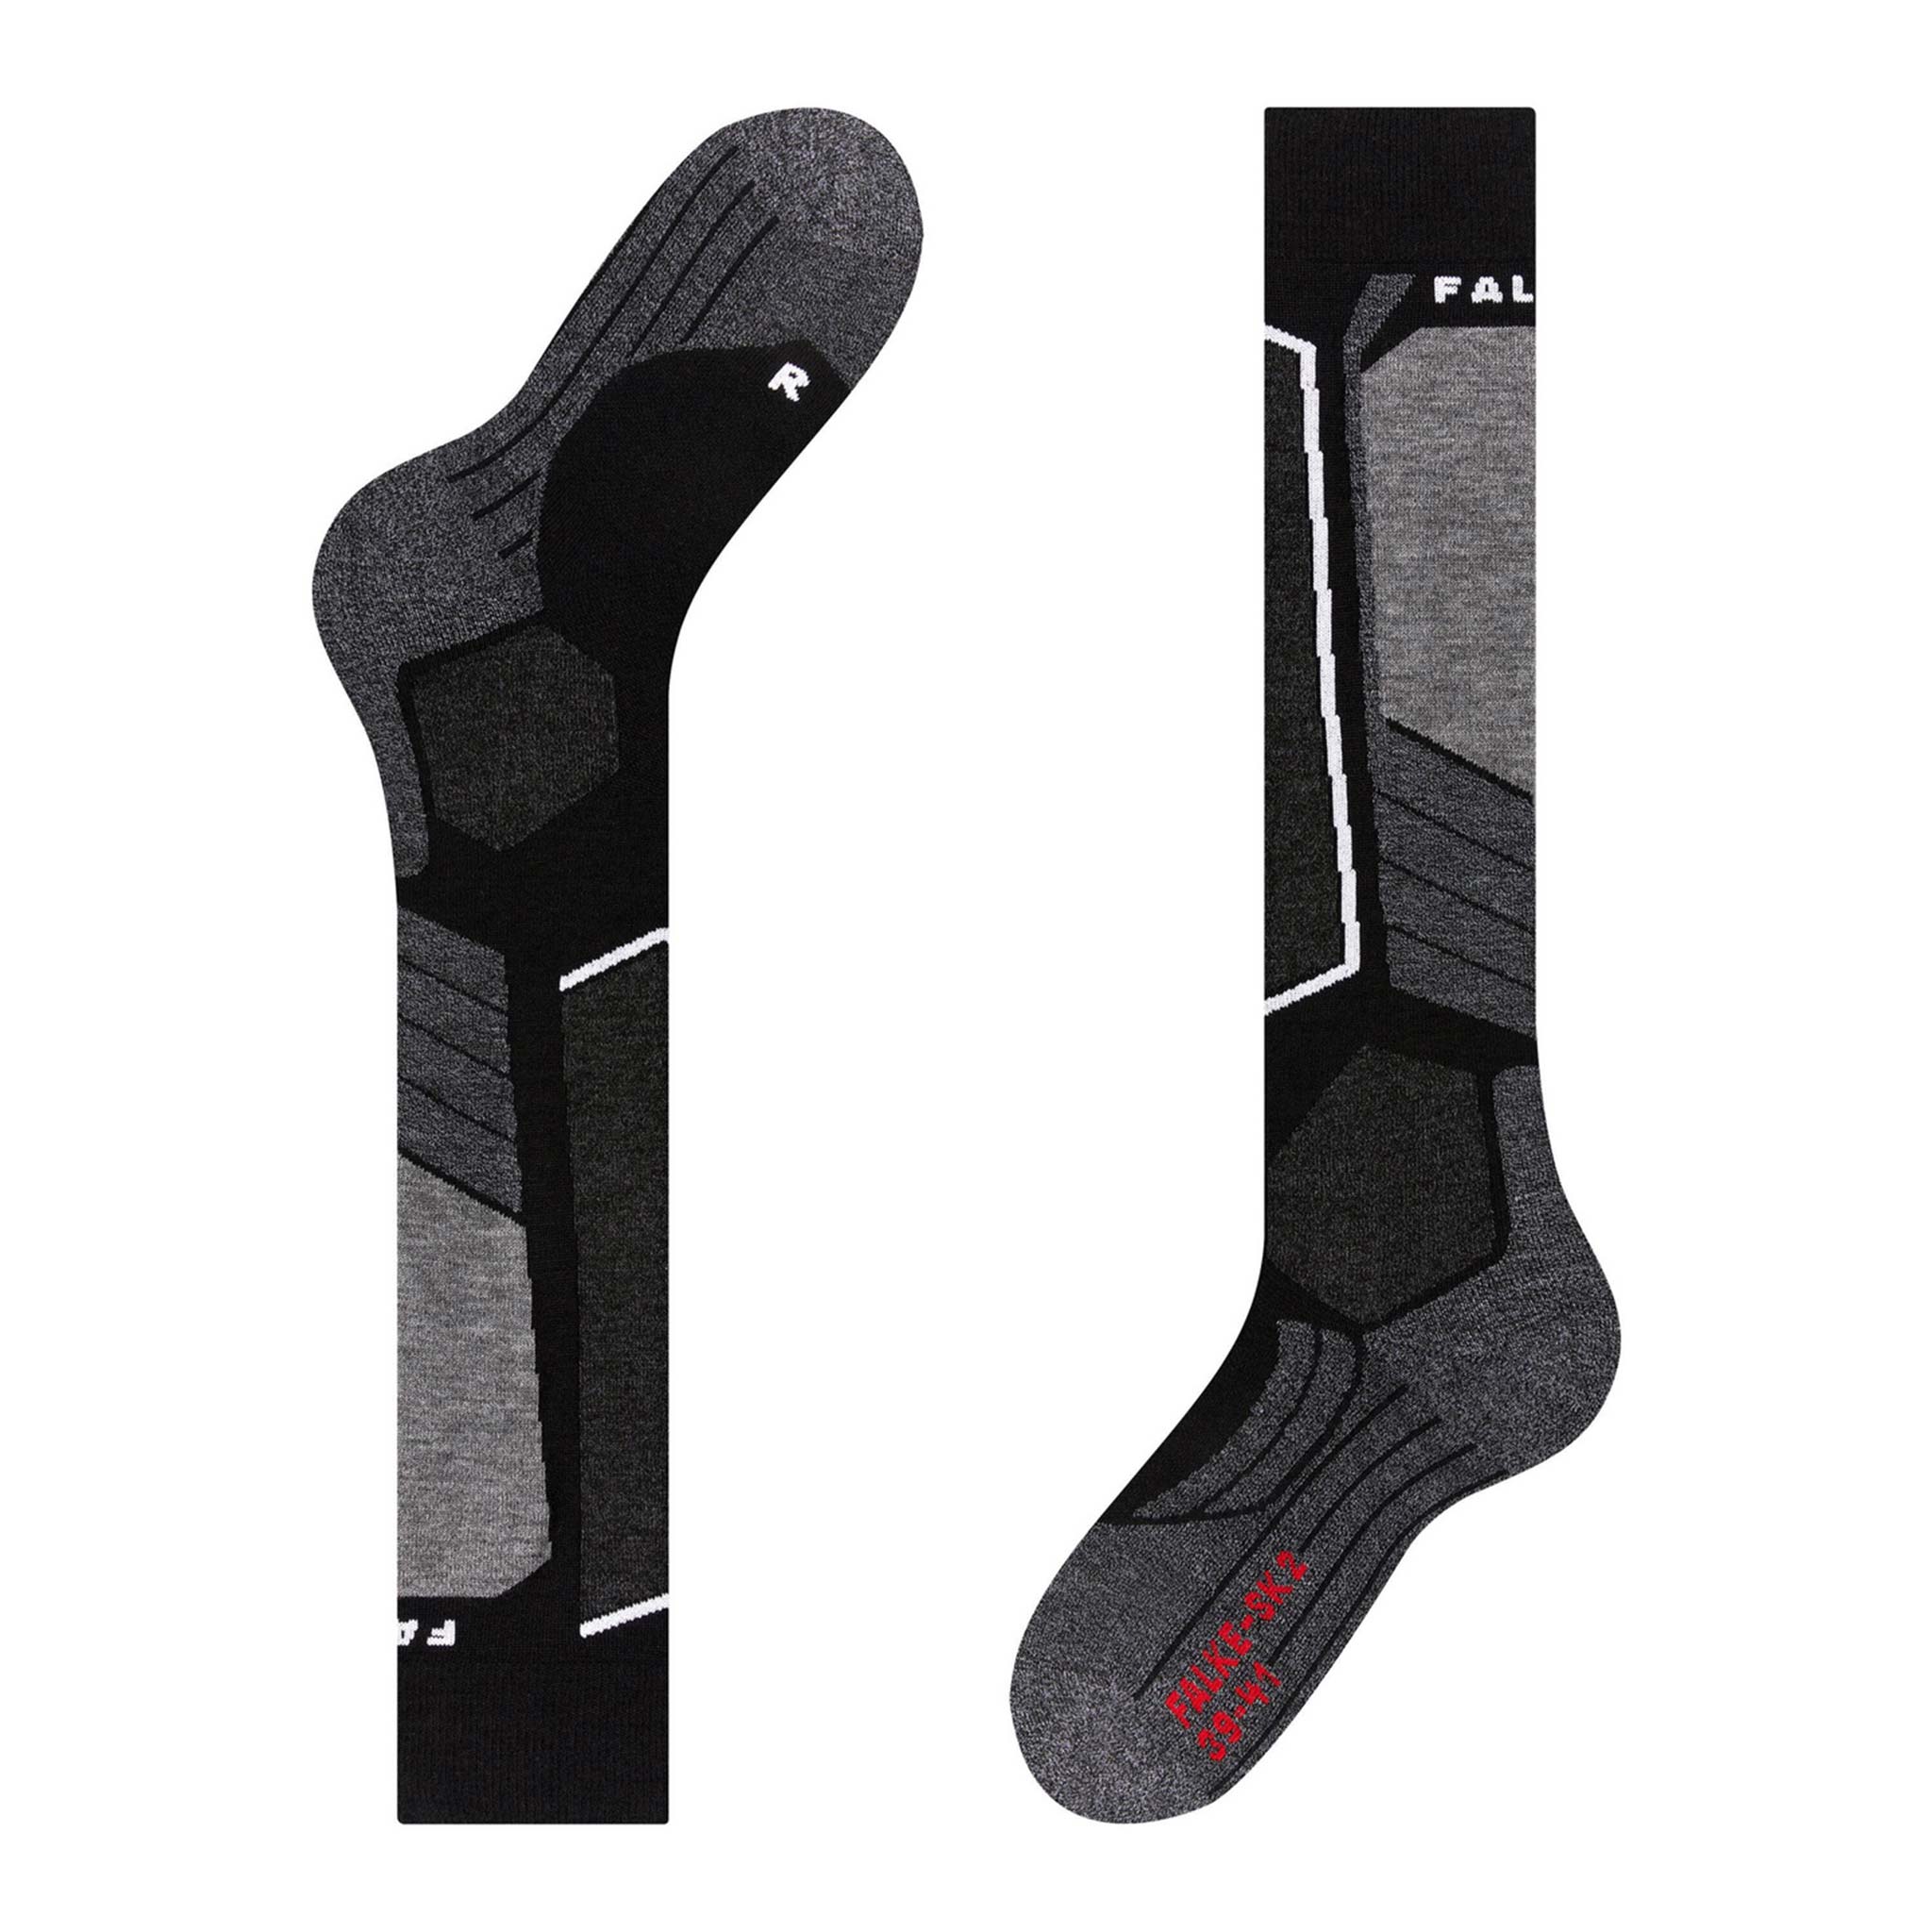 SK2 Men’s Ski Socks in Black